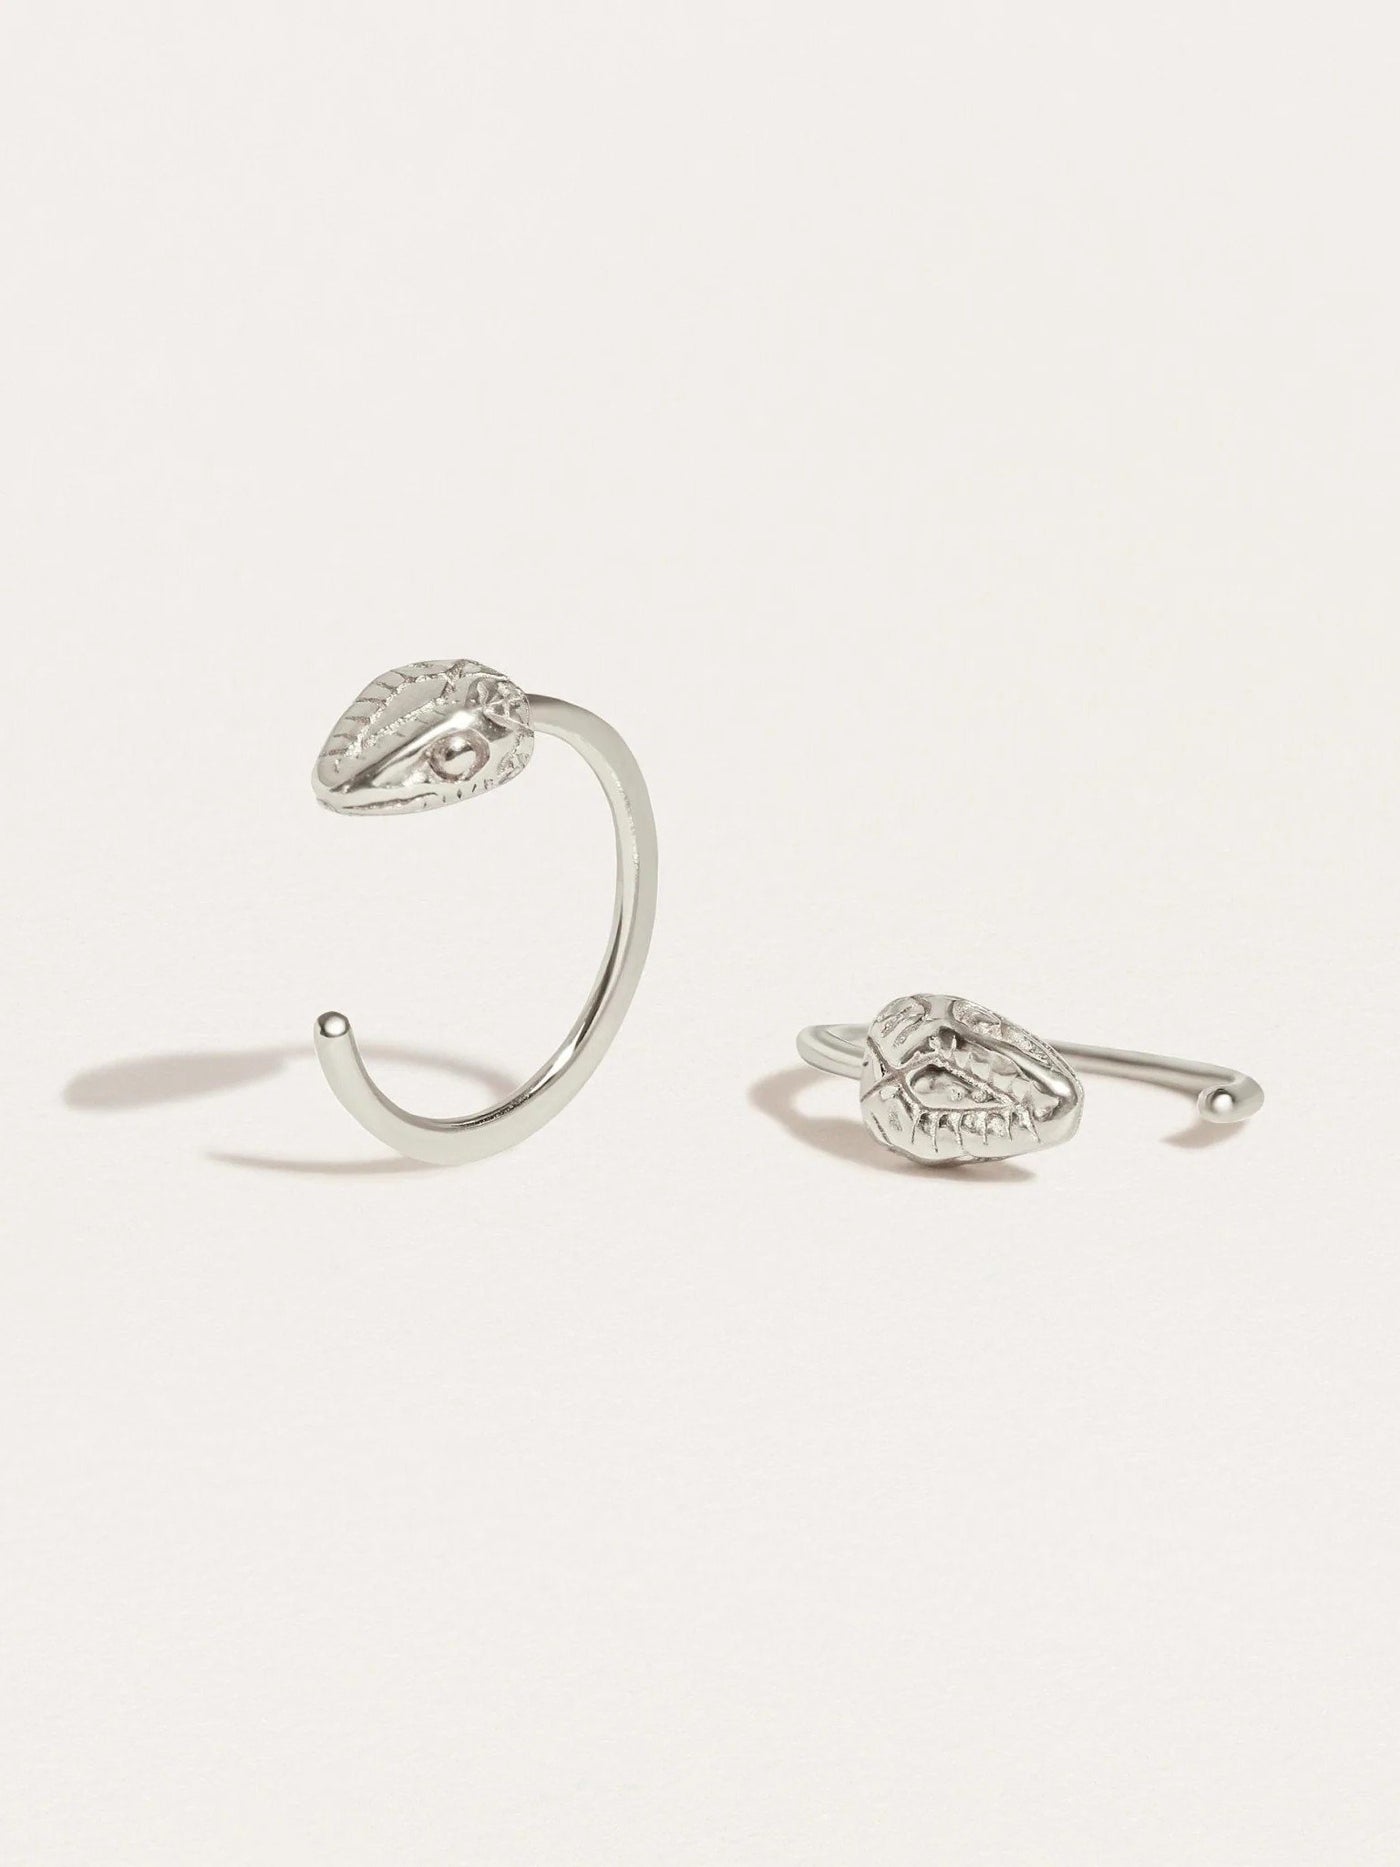 Snake Huggie Earrings - 925 Sterling SilverPair925 silver jewelryAnimal earringsLunai Jewelry